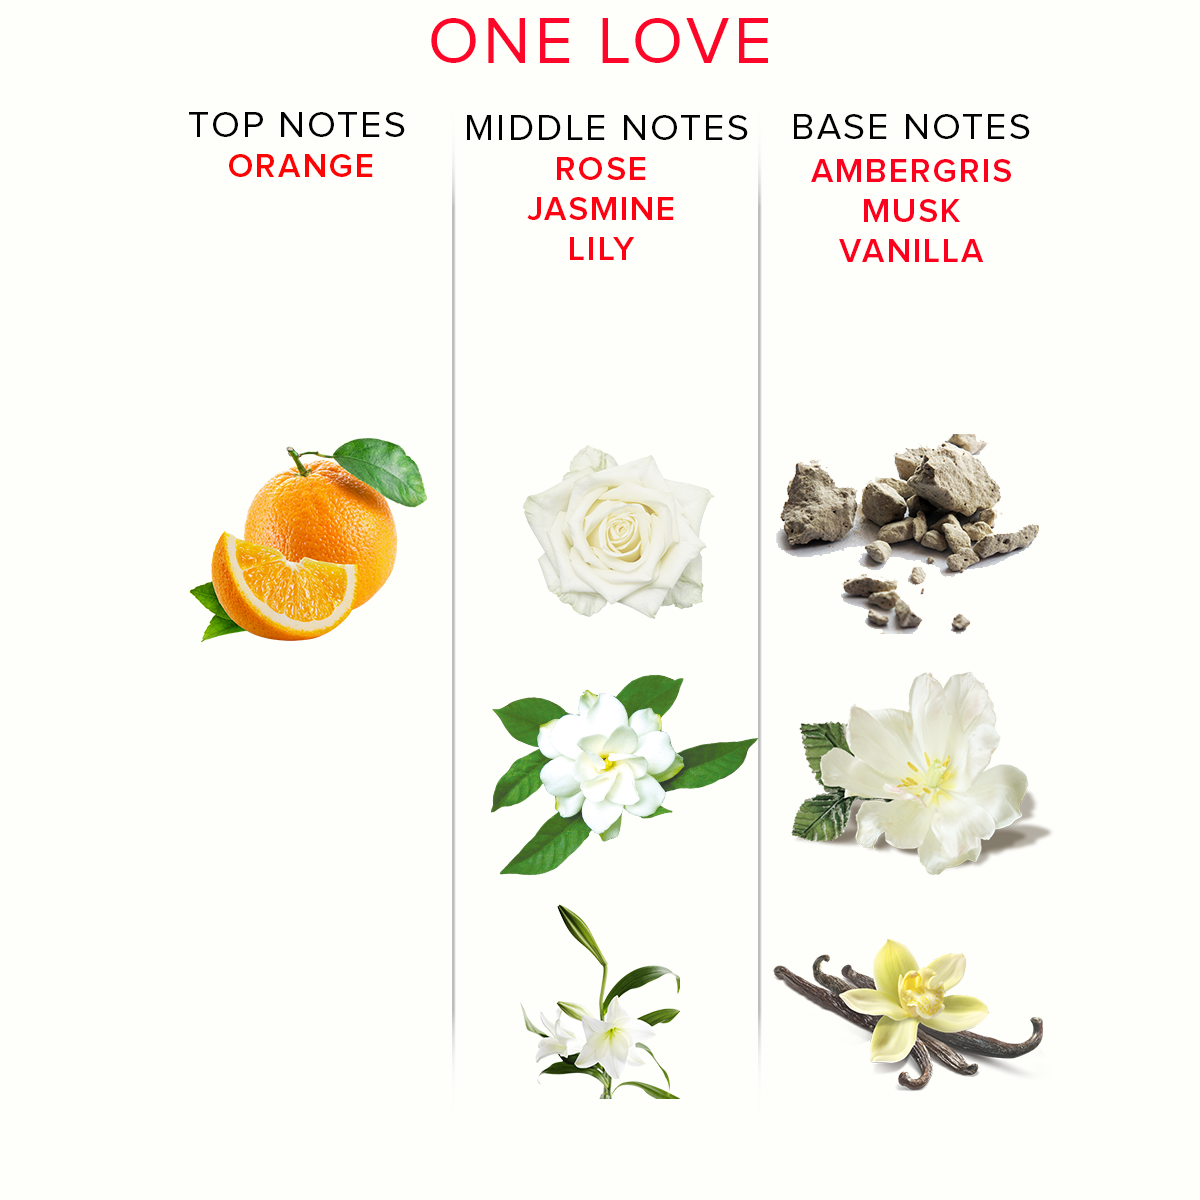 One Love Pheromone Parfum Deluxe Size